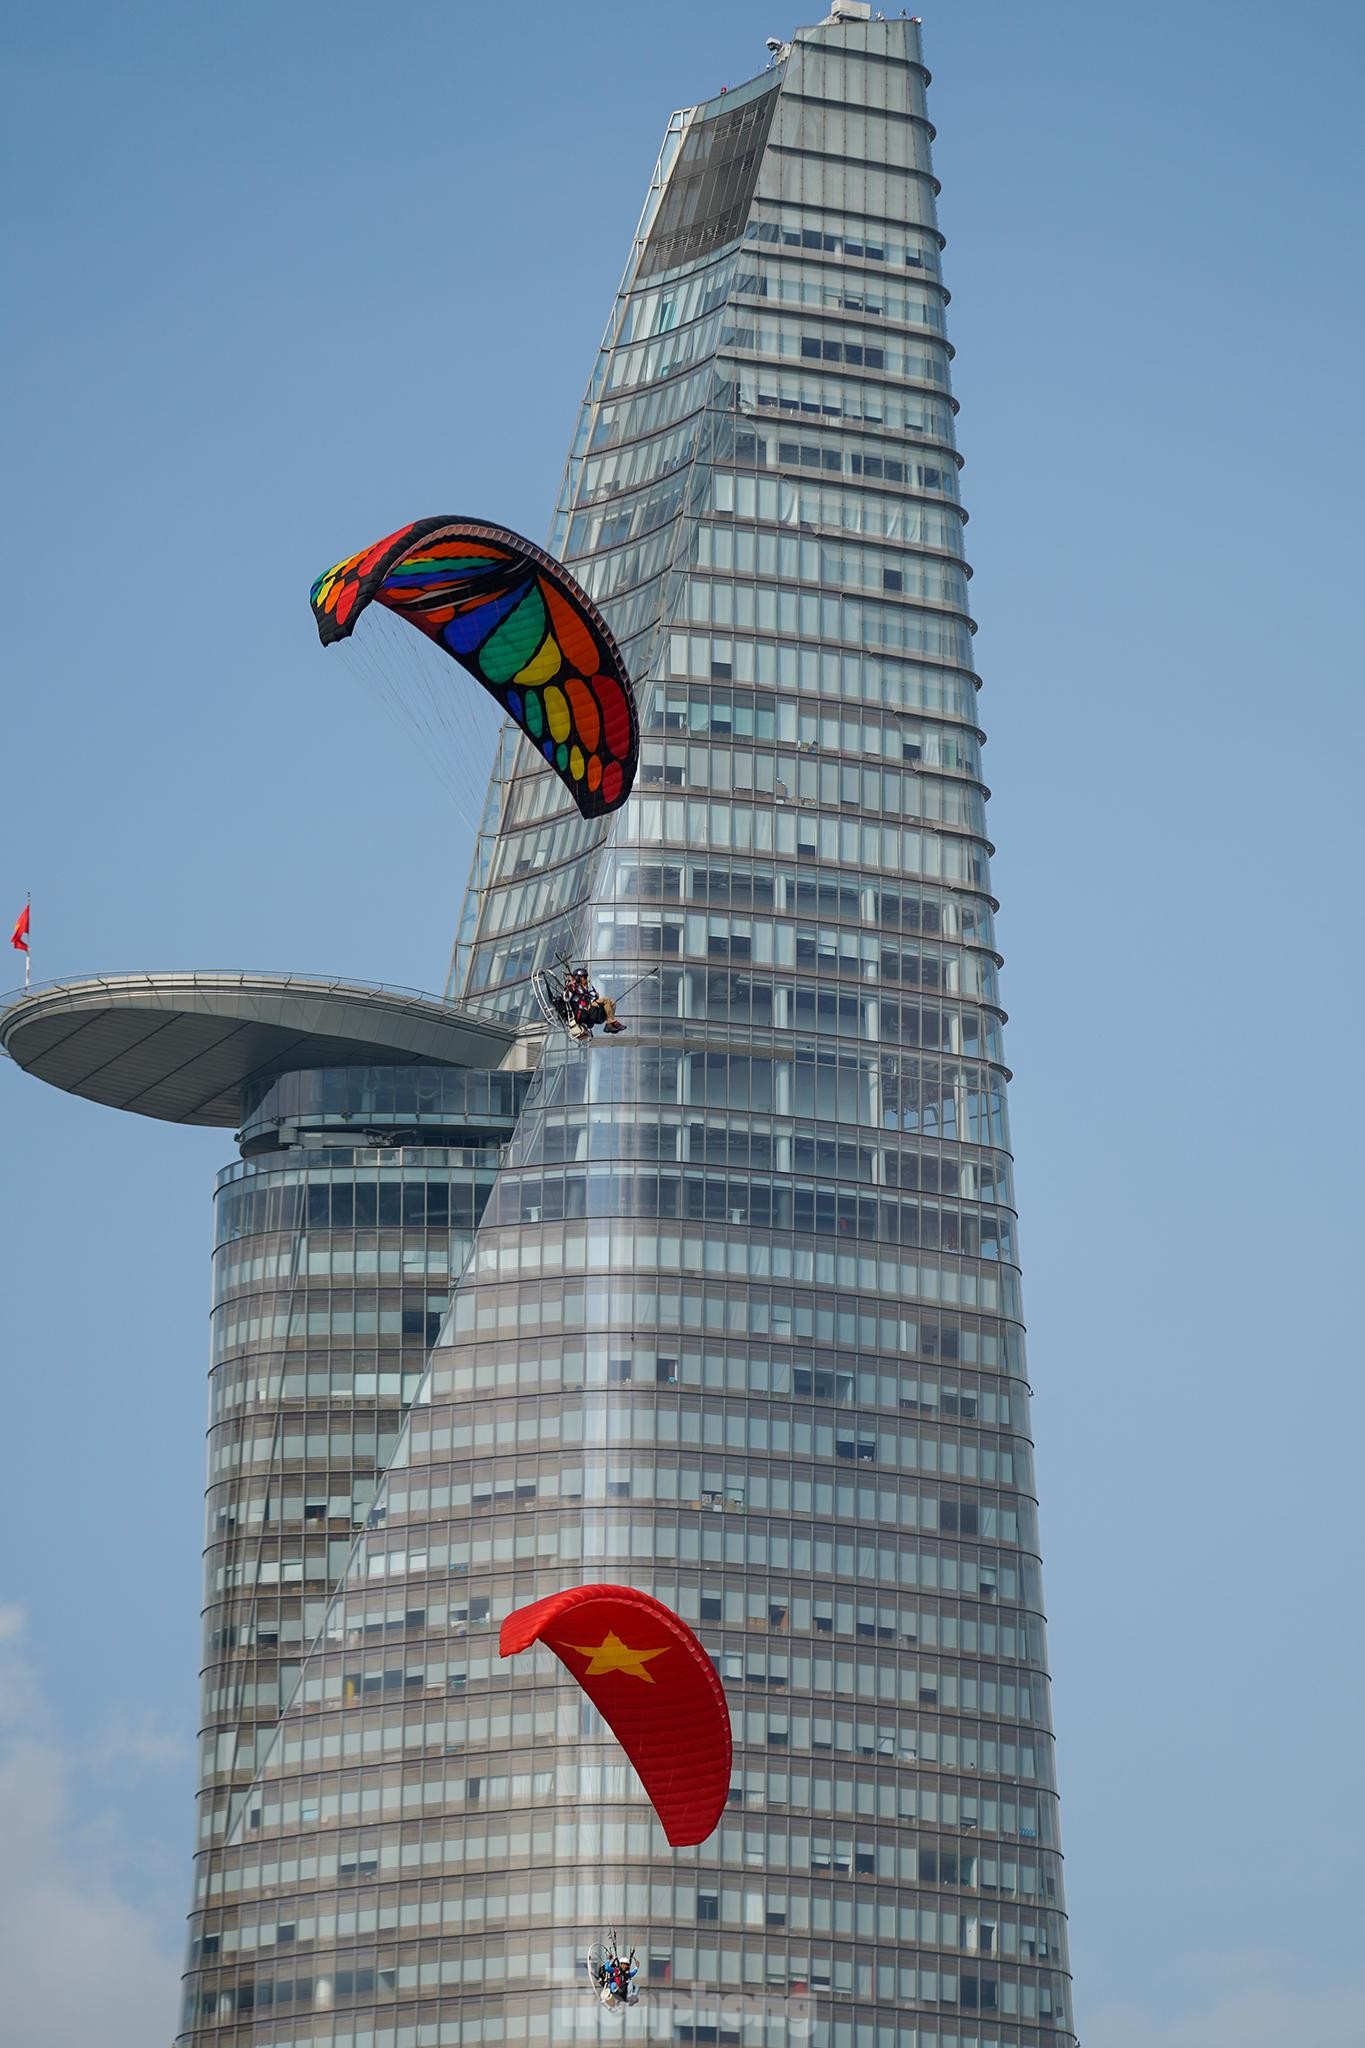 Cận cảnh khinh khí cầu kéo Quốc kỳ rộng 1800m2 mừng Quốc khánh 2/9 - Ảnh 29.